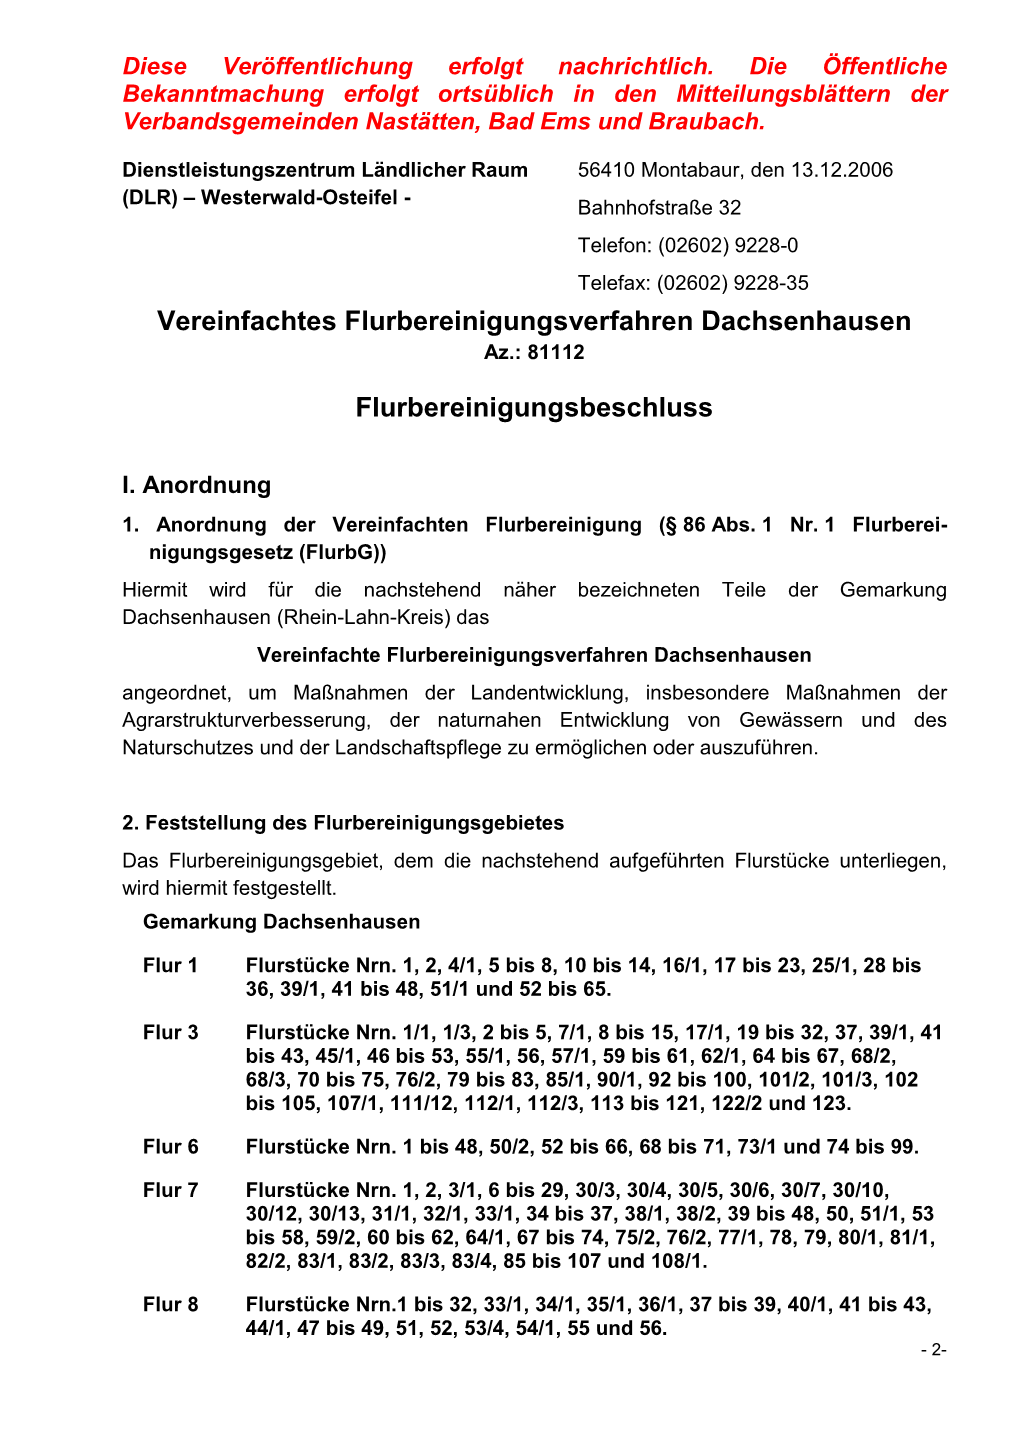 Vereinfachtes Flurbereinigungsverfahren Dachsenhausen Az.: 81112